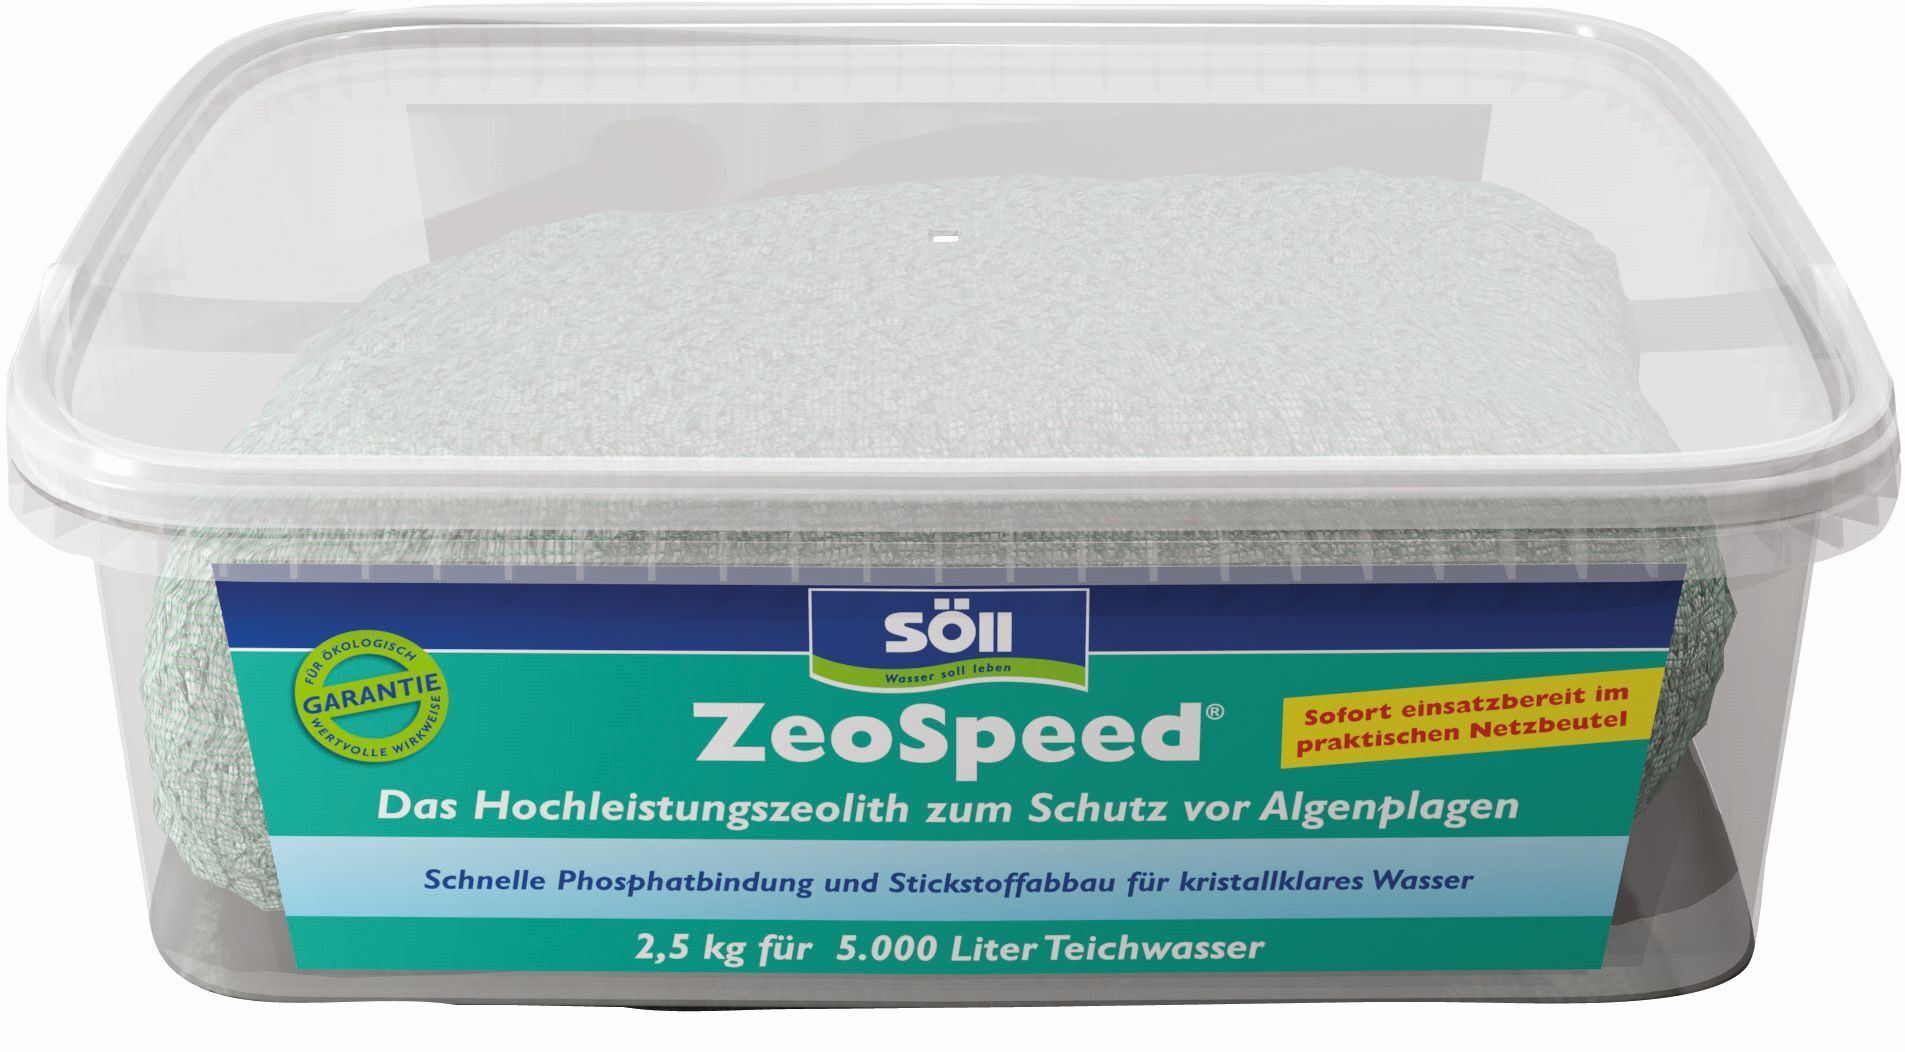 ZeoSpeed Hochleistungs-Zeolith zur Algenvorbeugung